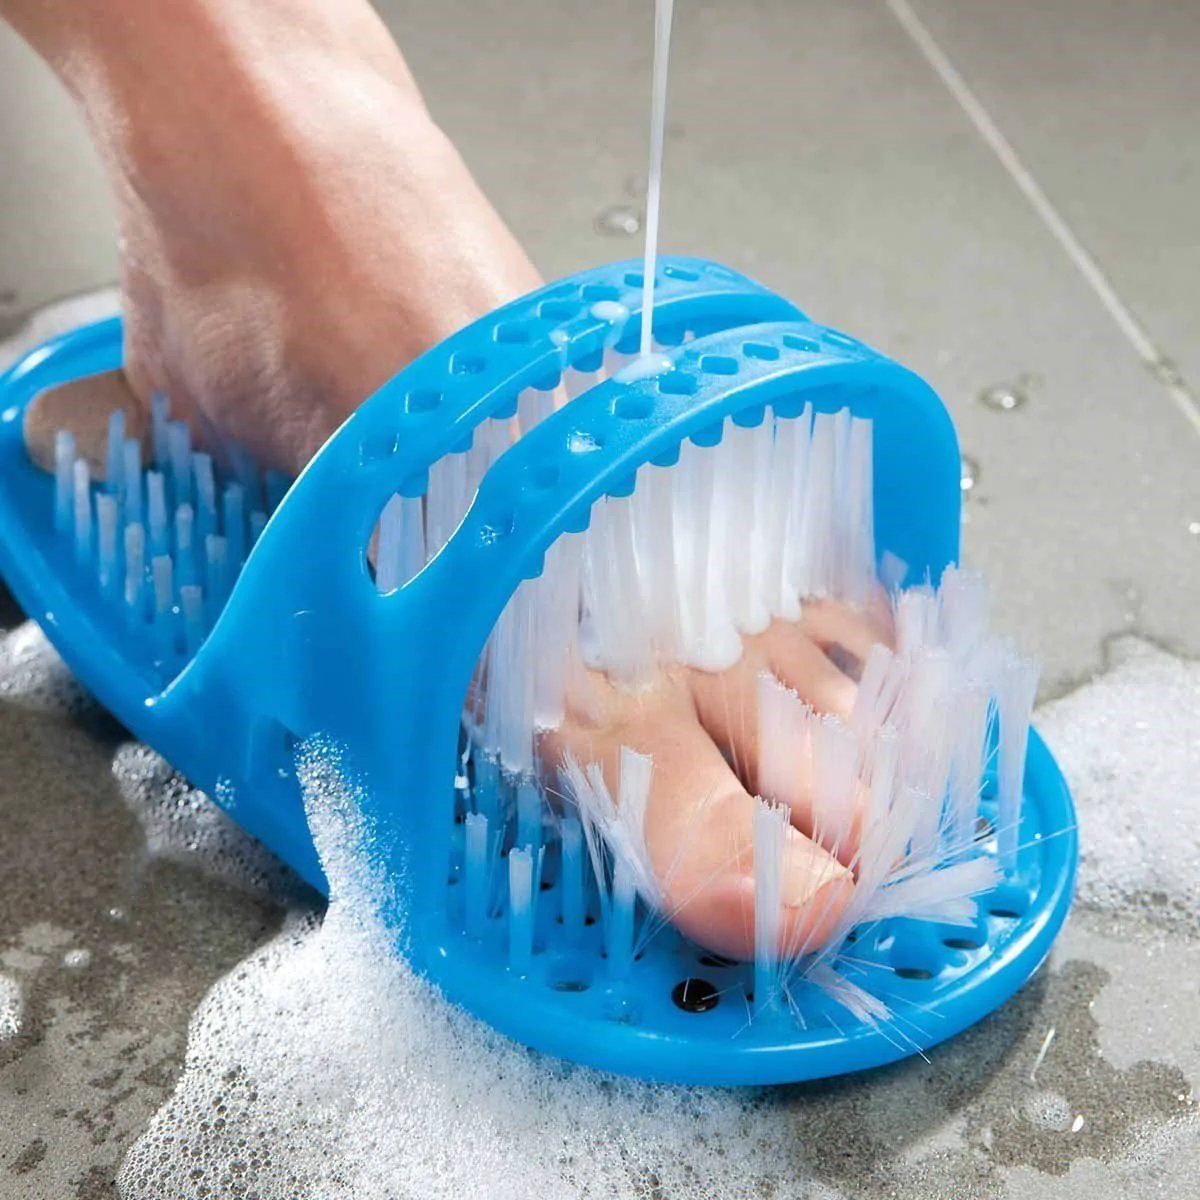 Dusch-Fußbürste Fußmassage Hornhautentferner Füße Rutschfeste für Fußwaschbürste Massage Bürste MAVURA Bimsstein Reinigung Fußpflege Feile Fußbürste